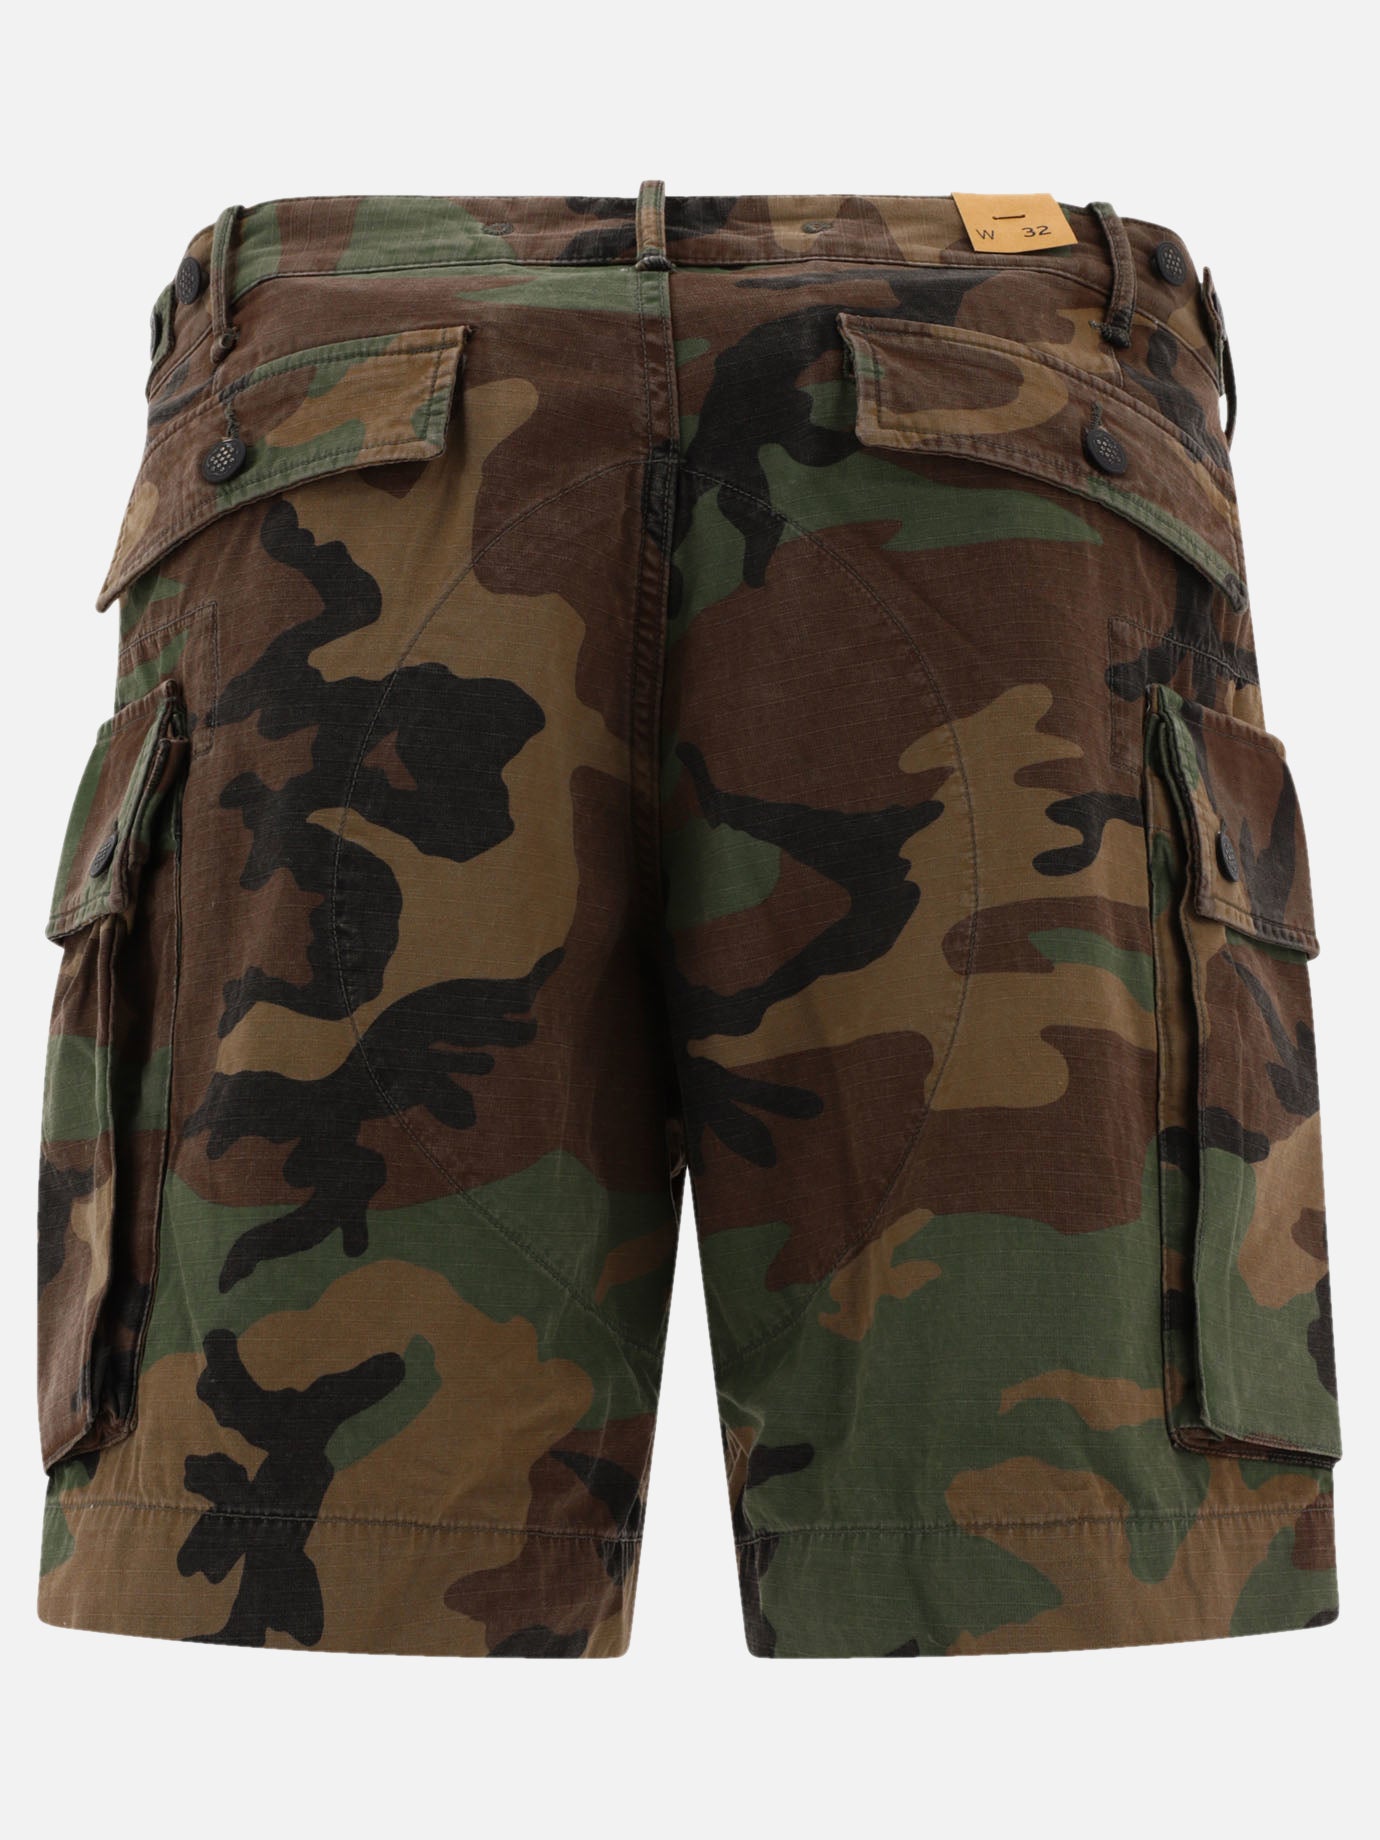 Camo ripstop cargo shorts